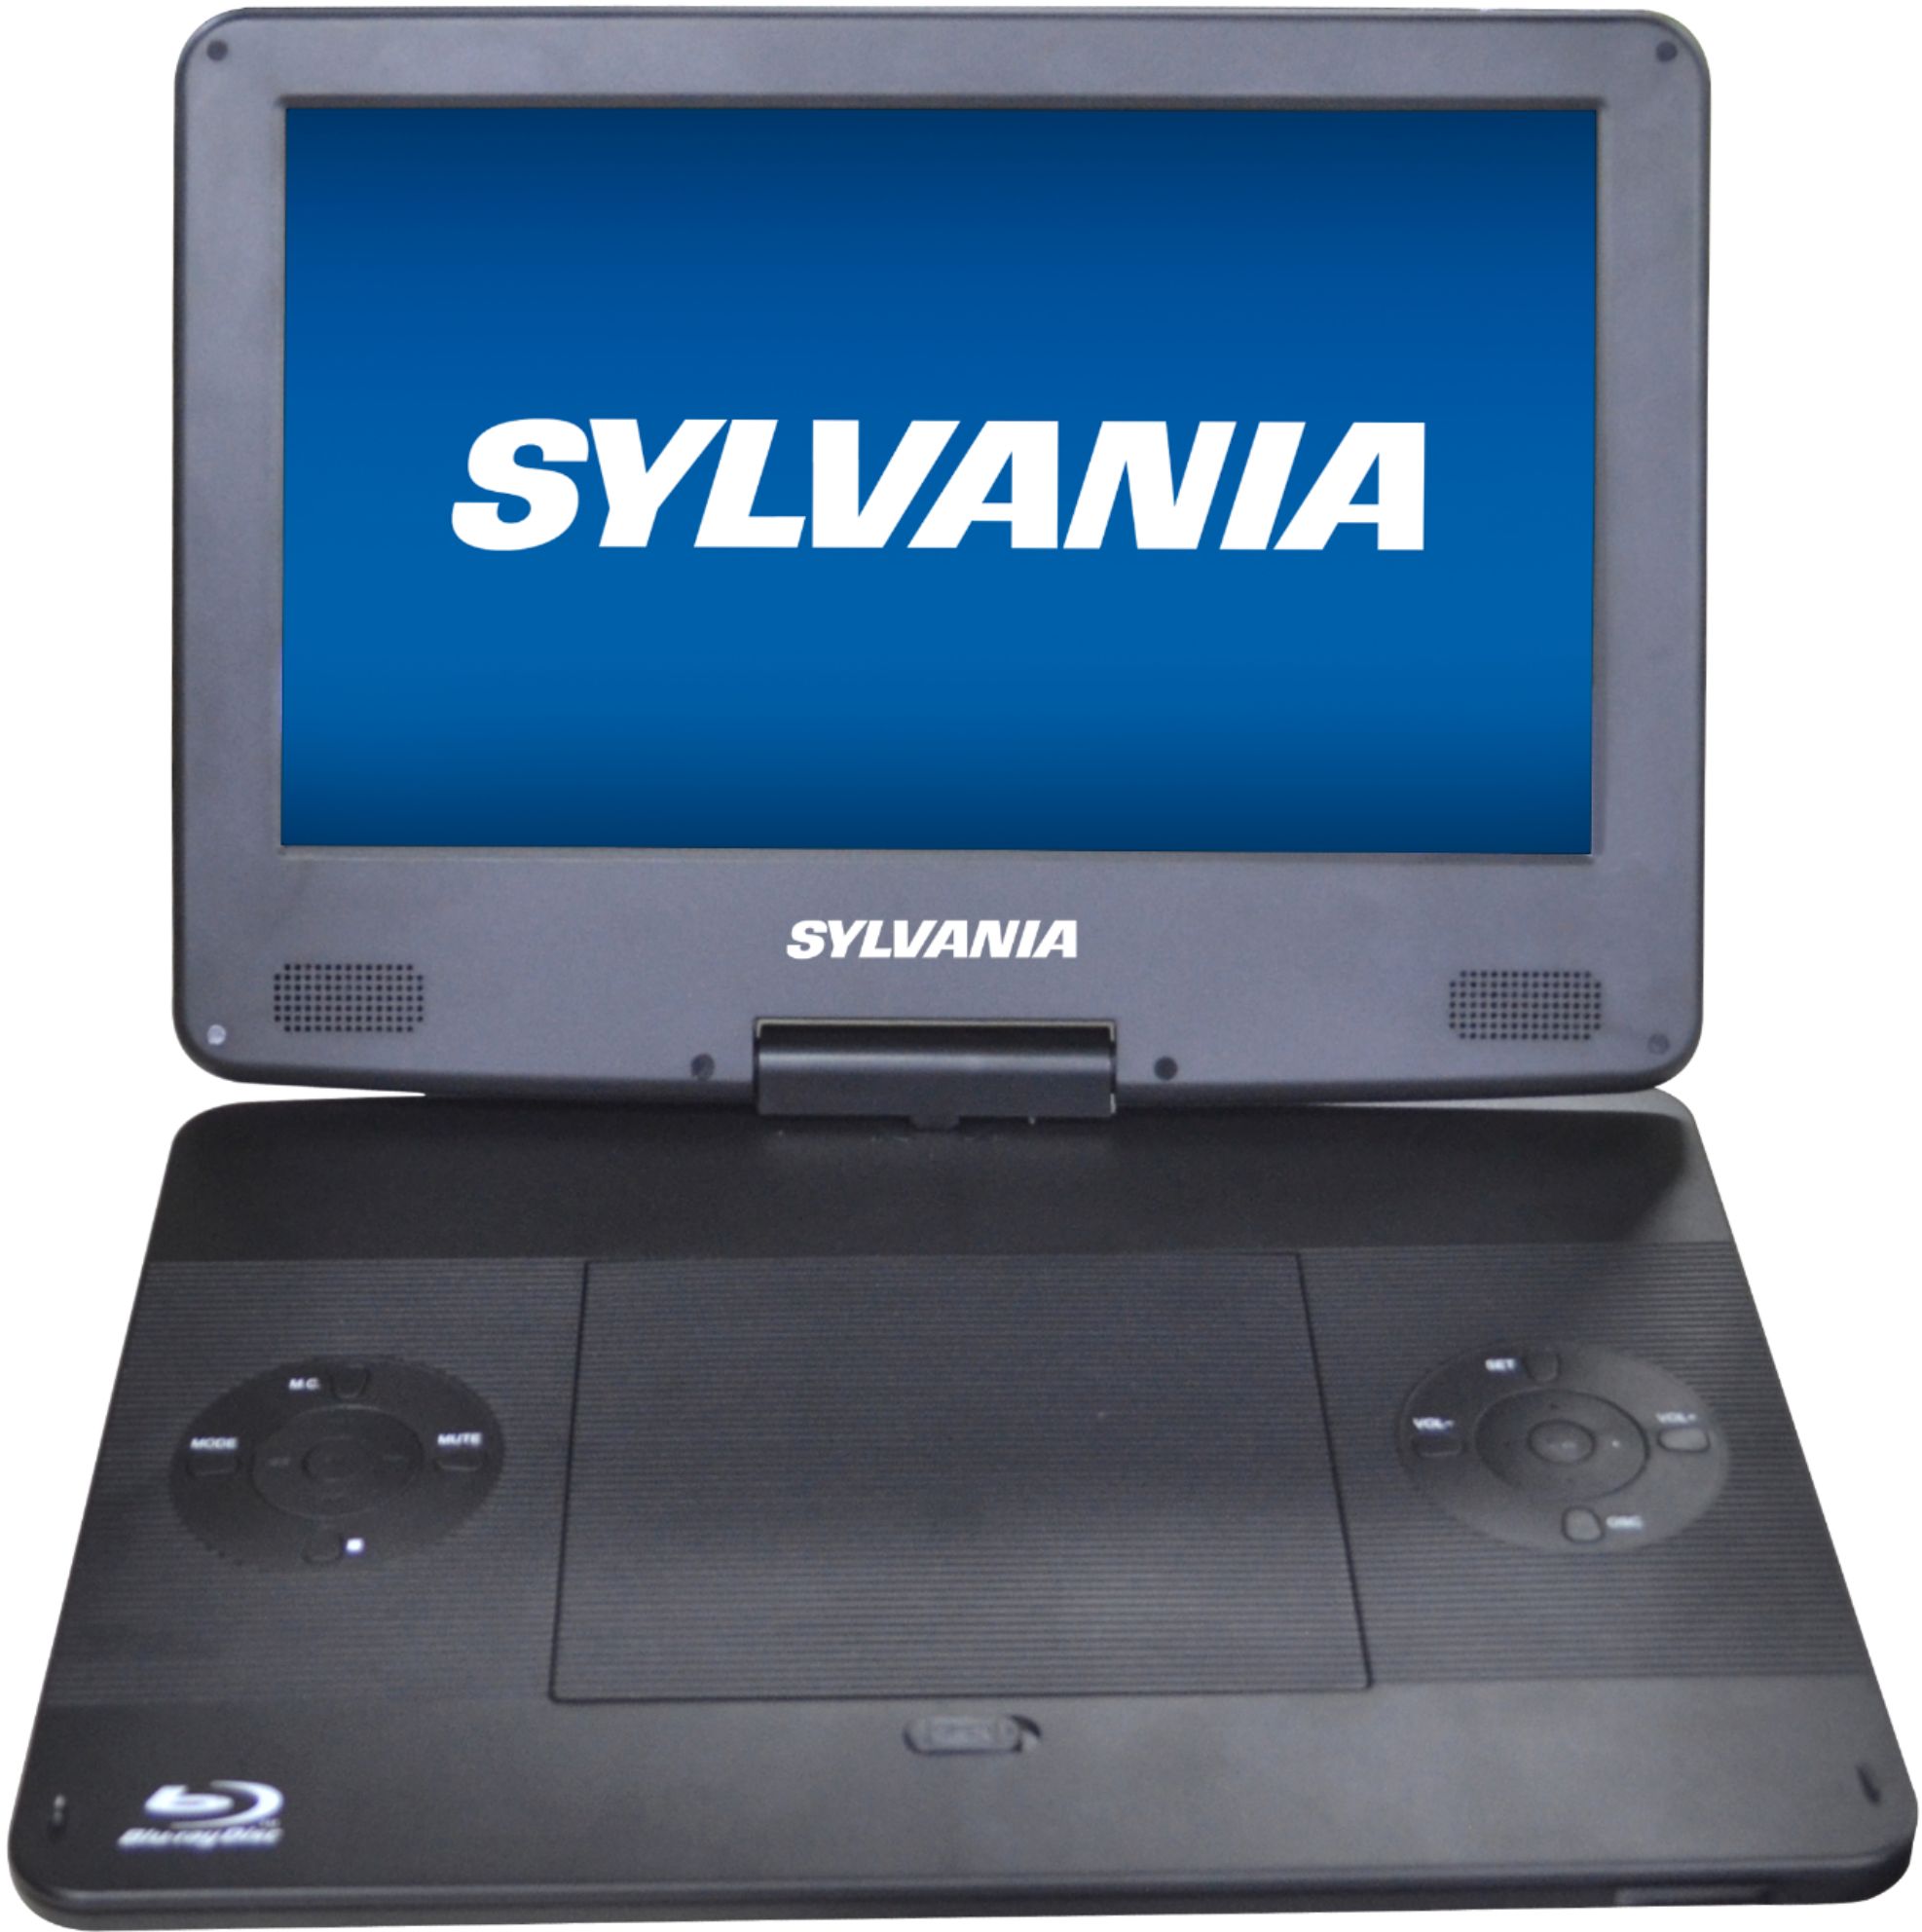 Sturen Perceptueel Bij naam Best Buy: Sylvania 13.3” Portable Blu-ray Player with Swivel Screen Black  SDVD1336